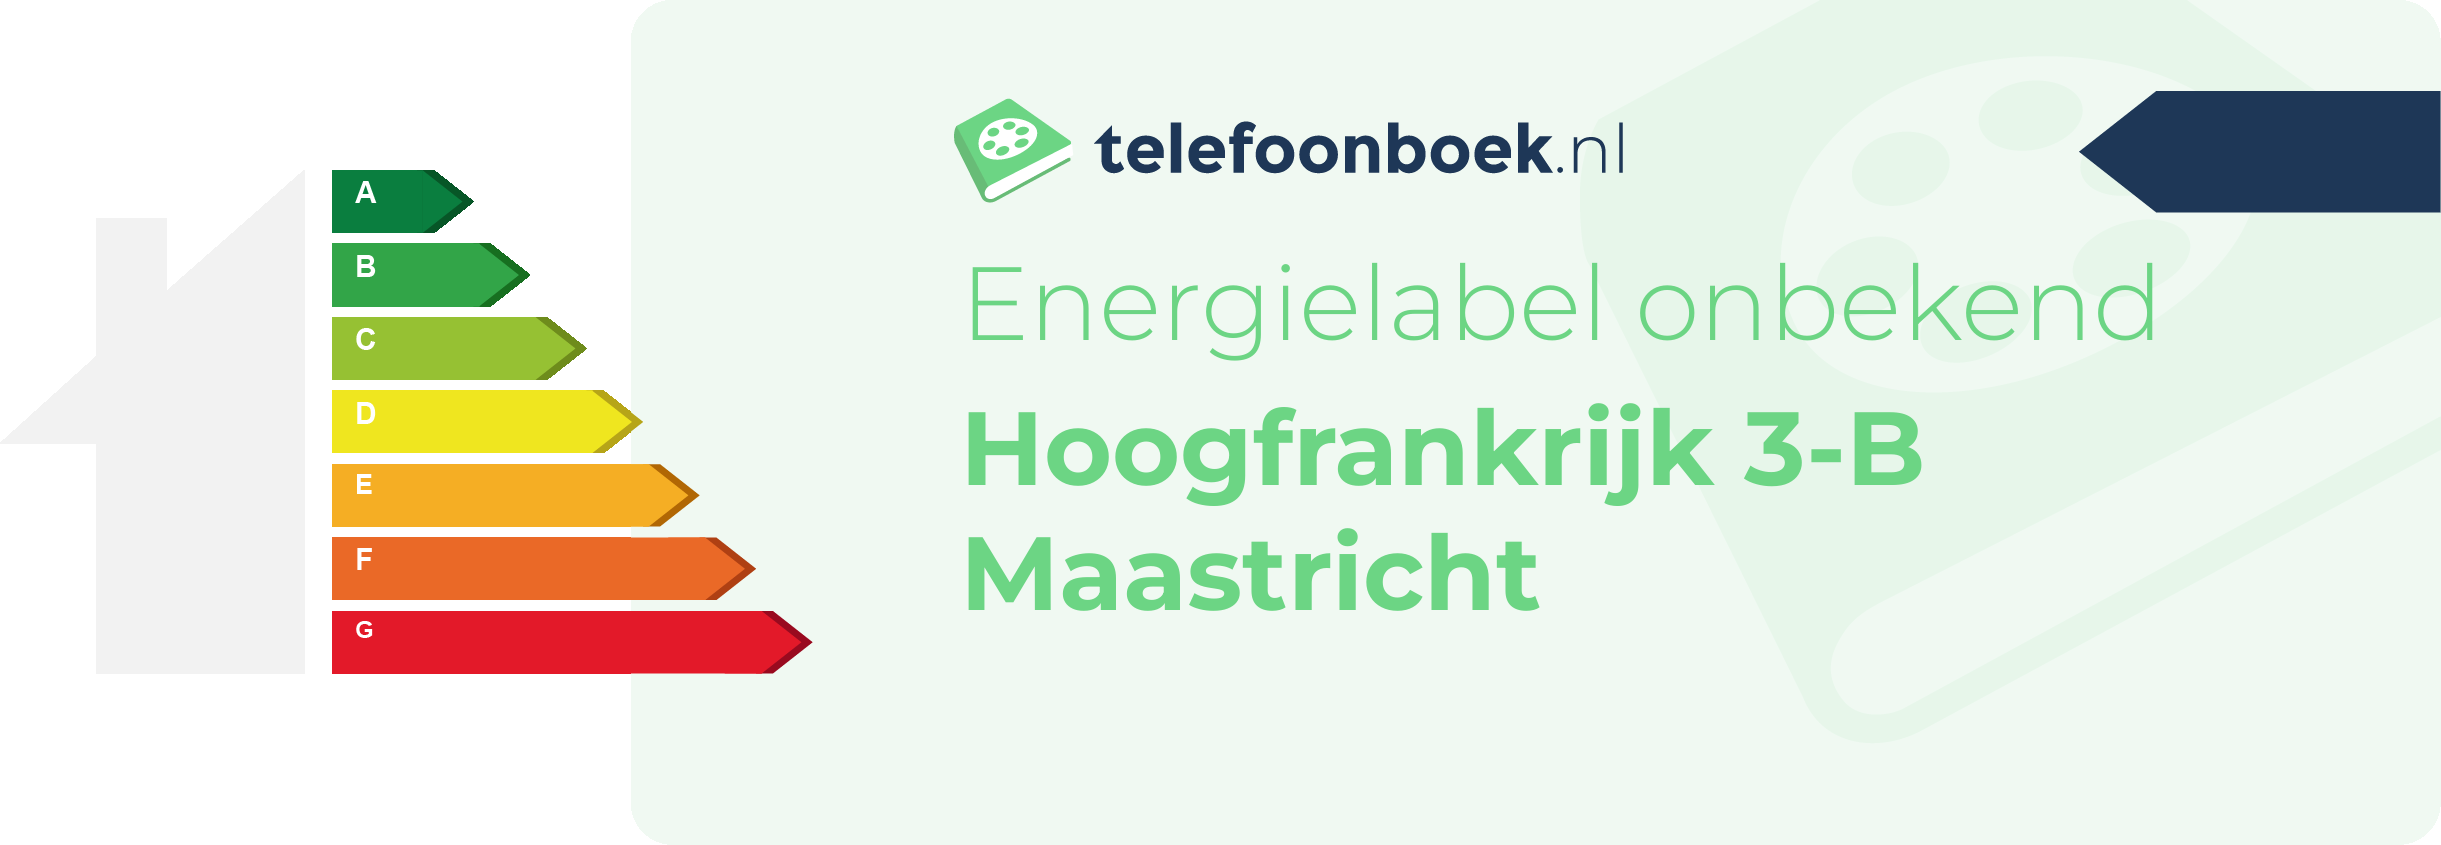 Energielabel Hoogfrankrijk 3-B Maastricht